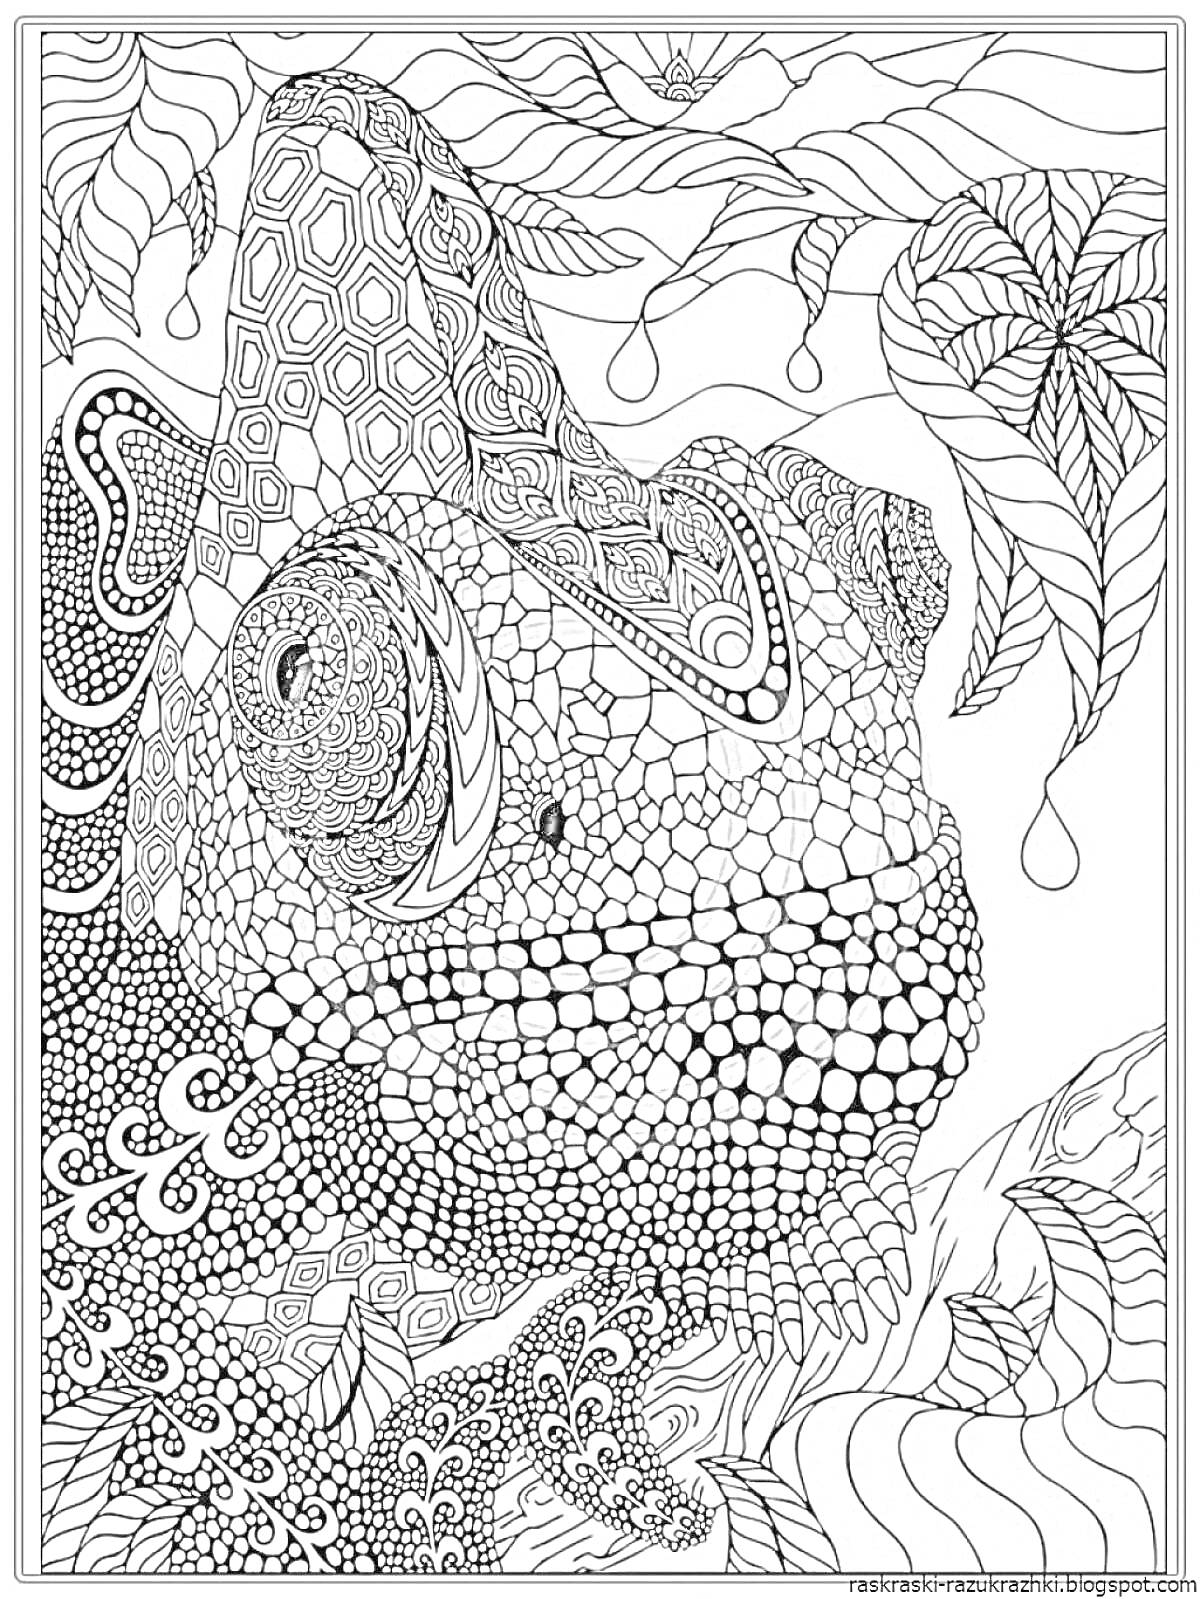 Раскраска антистресс раскраска с изображением хамелеона среди листвы с детализированным узором